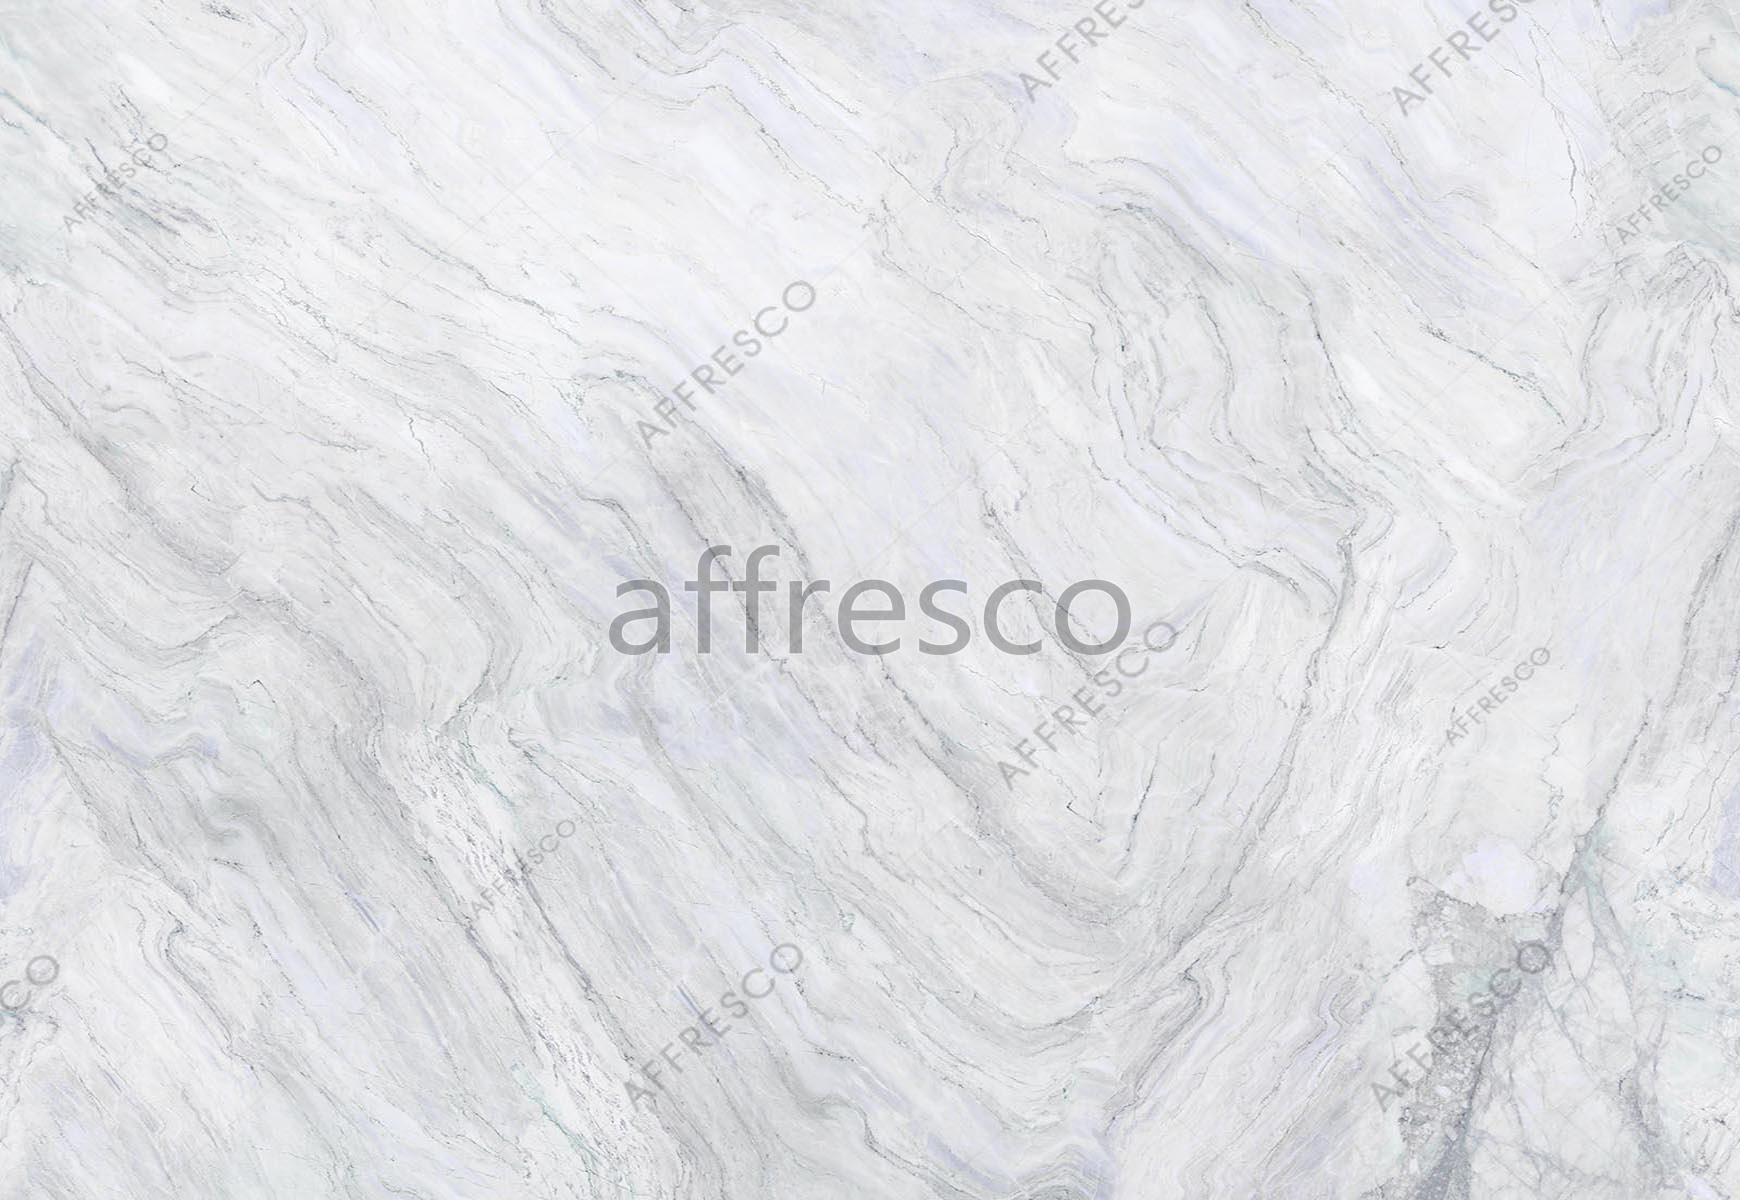 ID139123 | Fluid | stone cut | Affresco Factory